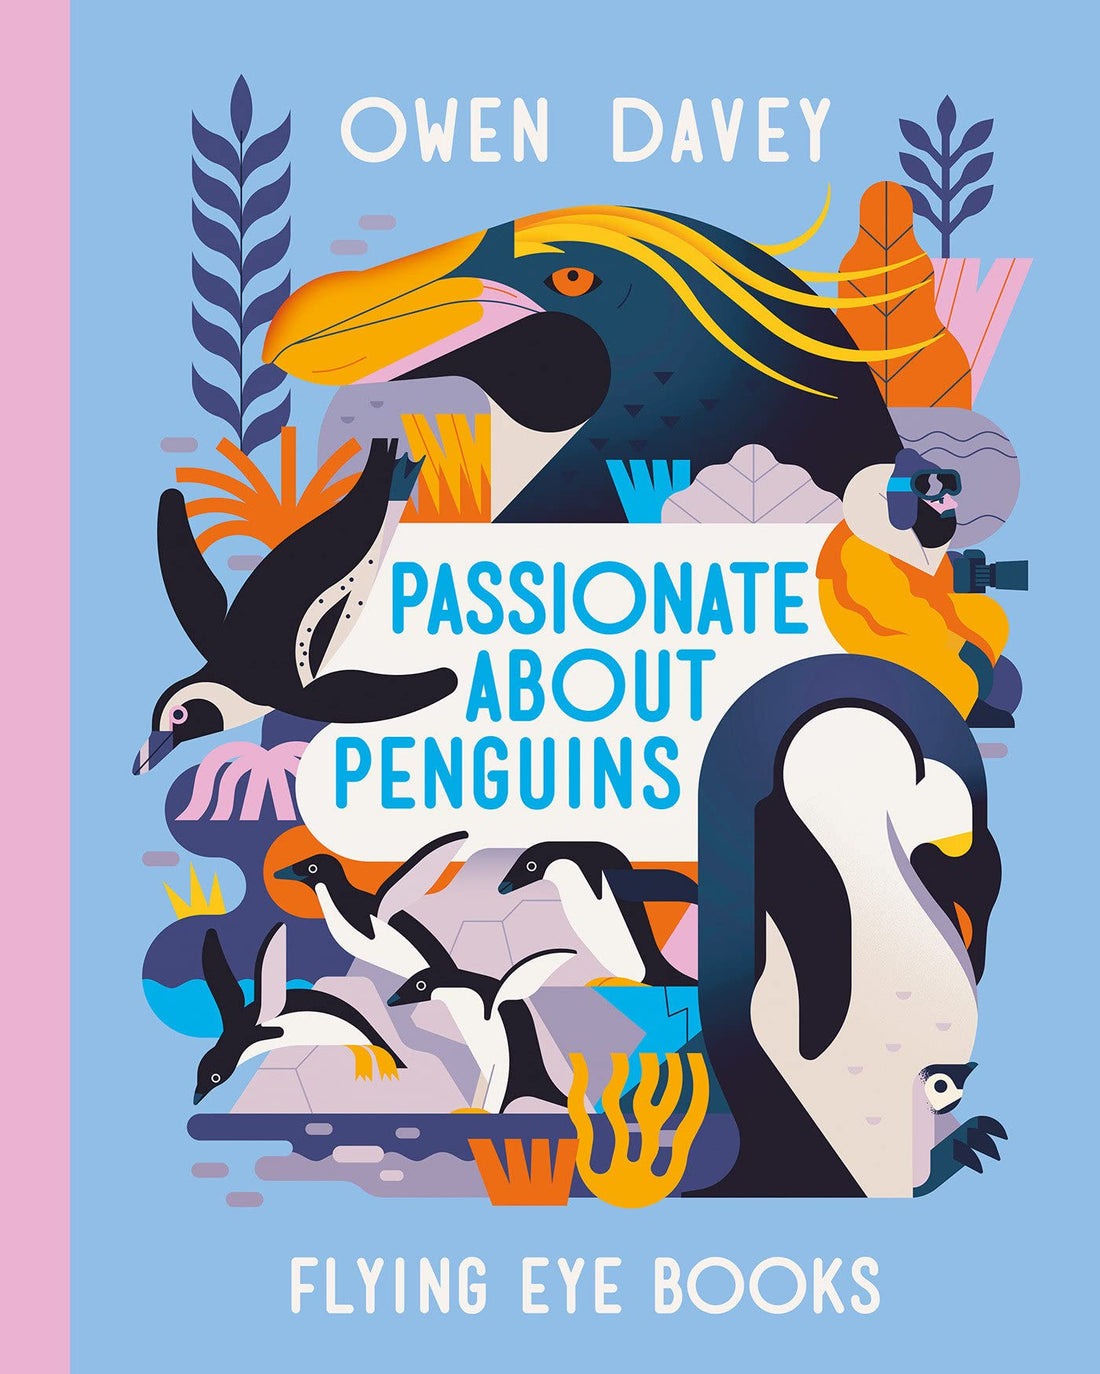 Passionate about Penguins - Parkette.